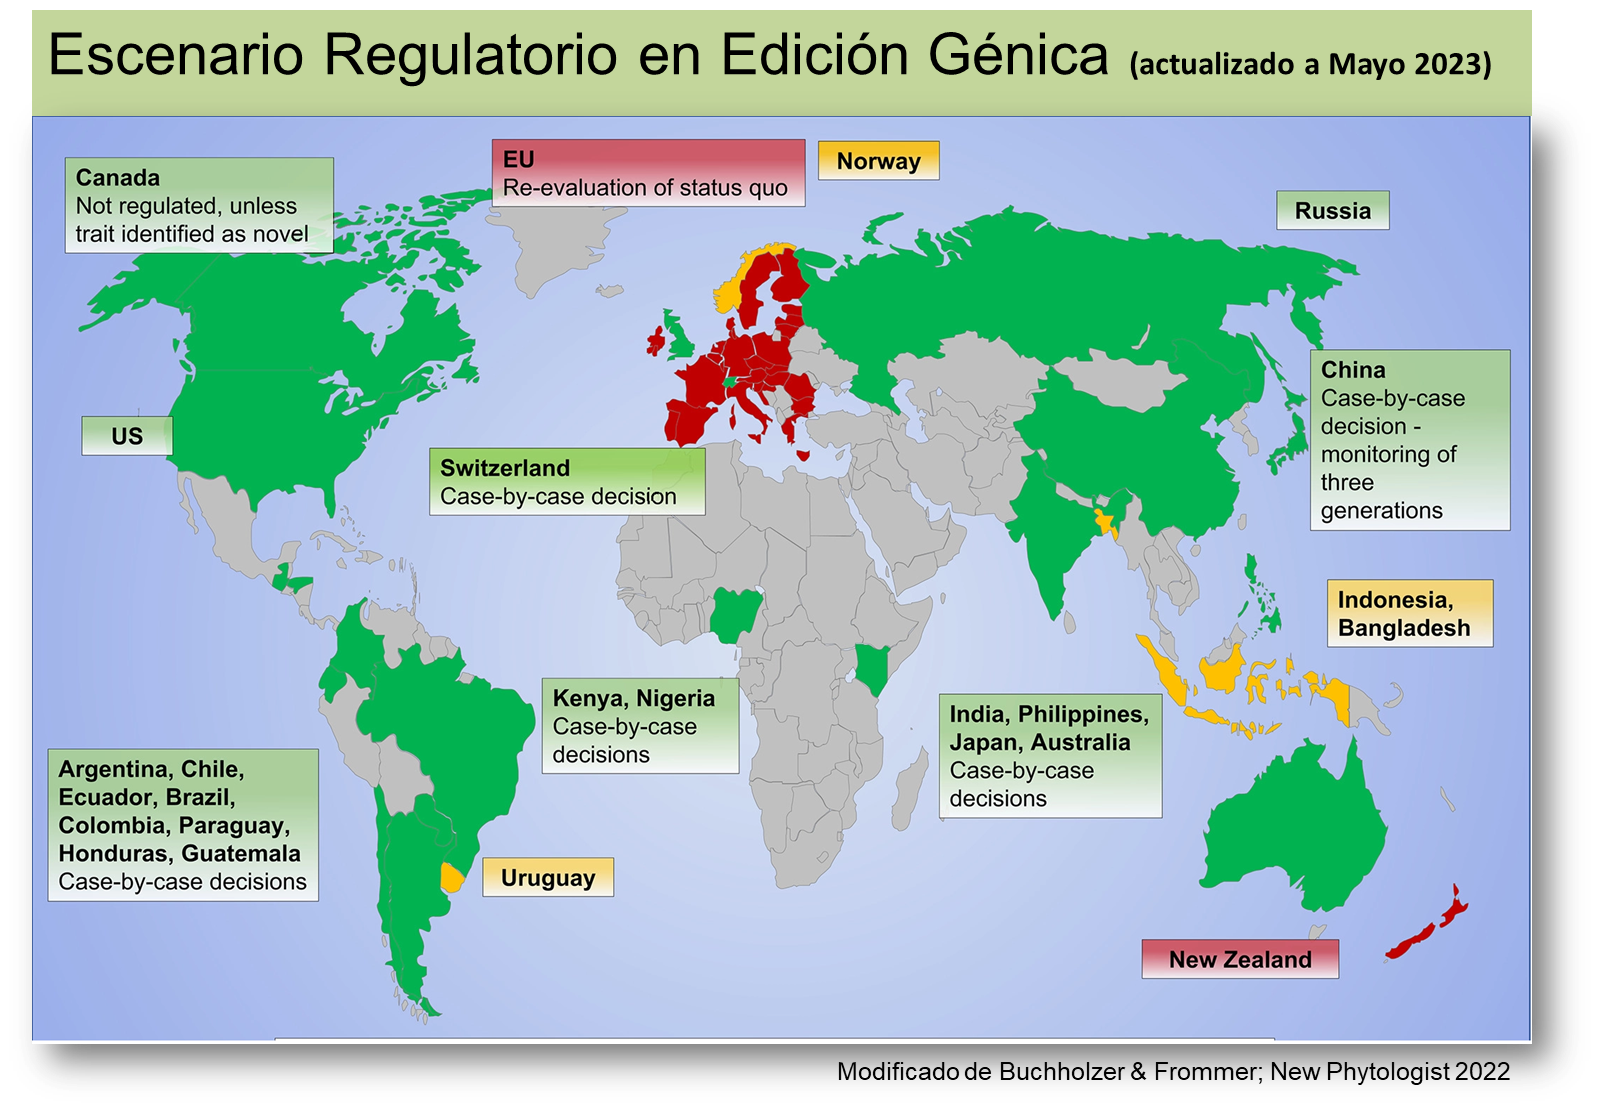 Estado de la legislación sobre edición génica en el mundo (Mayo 2023)